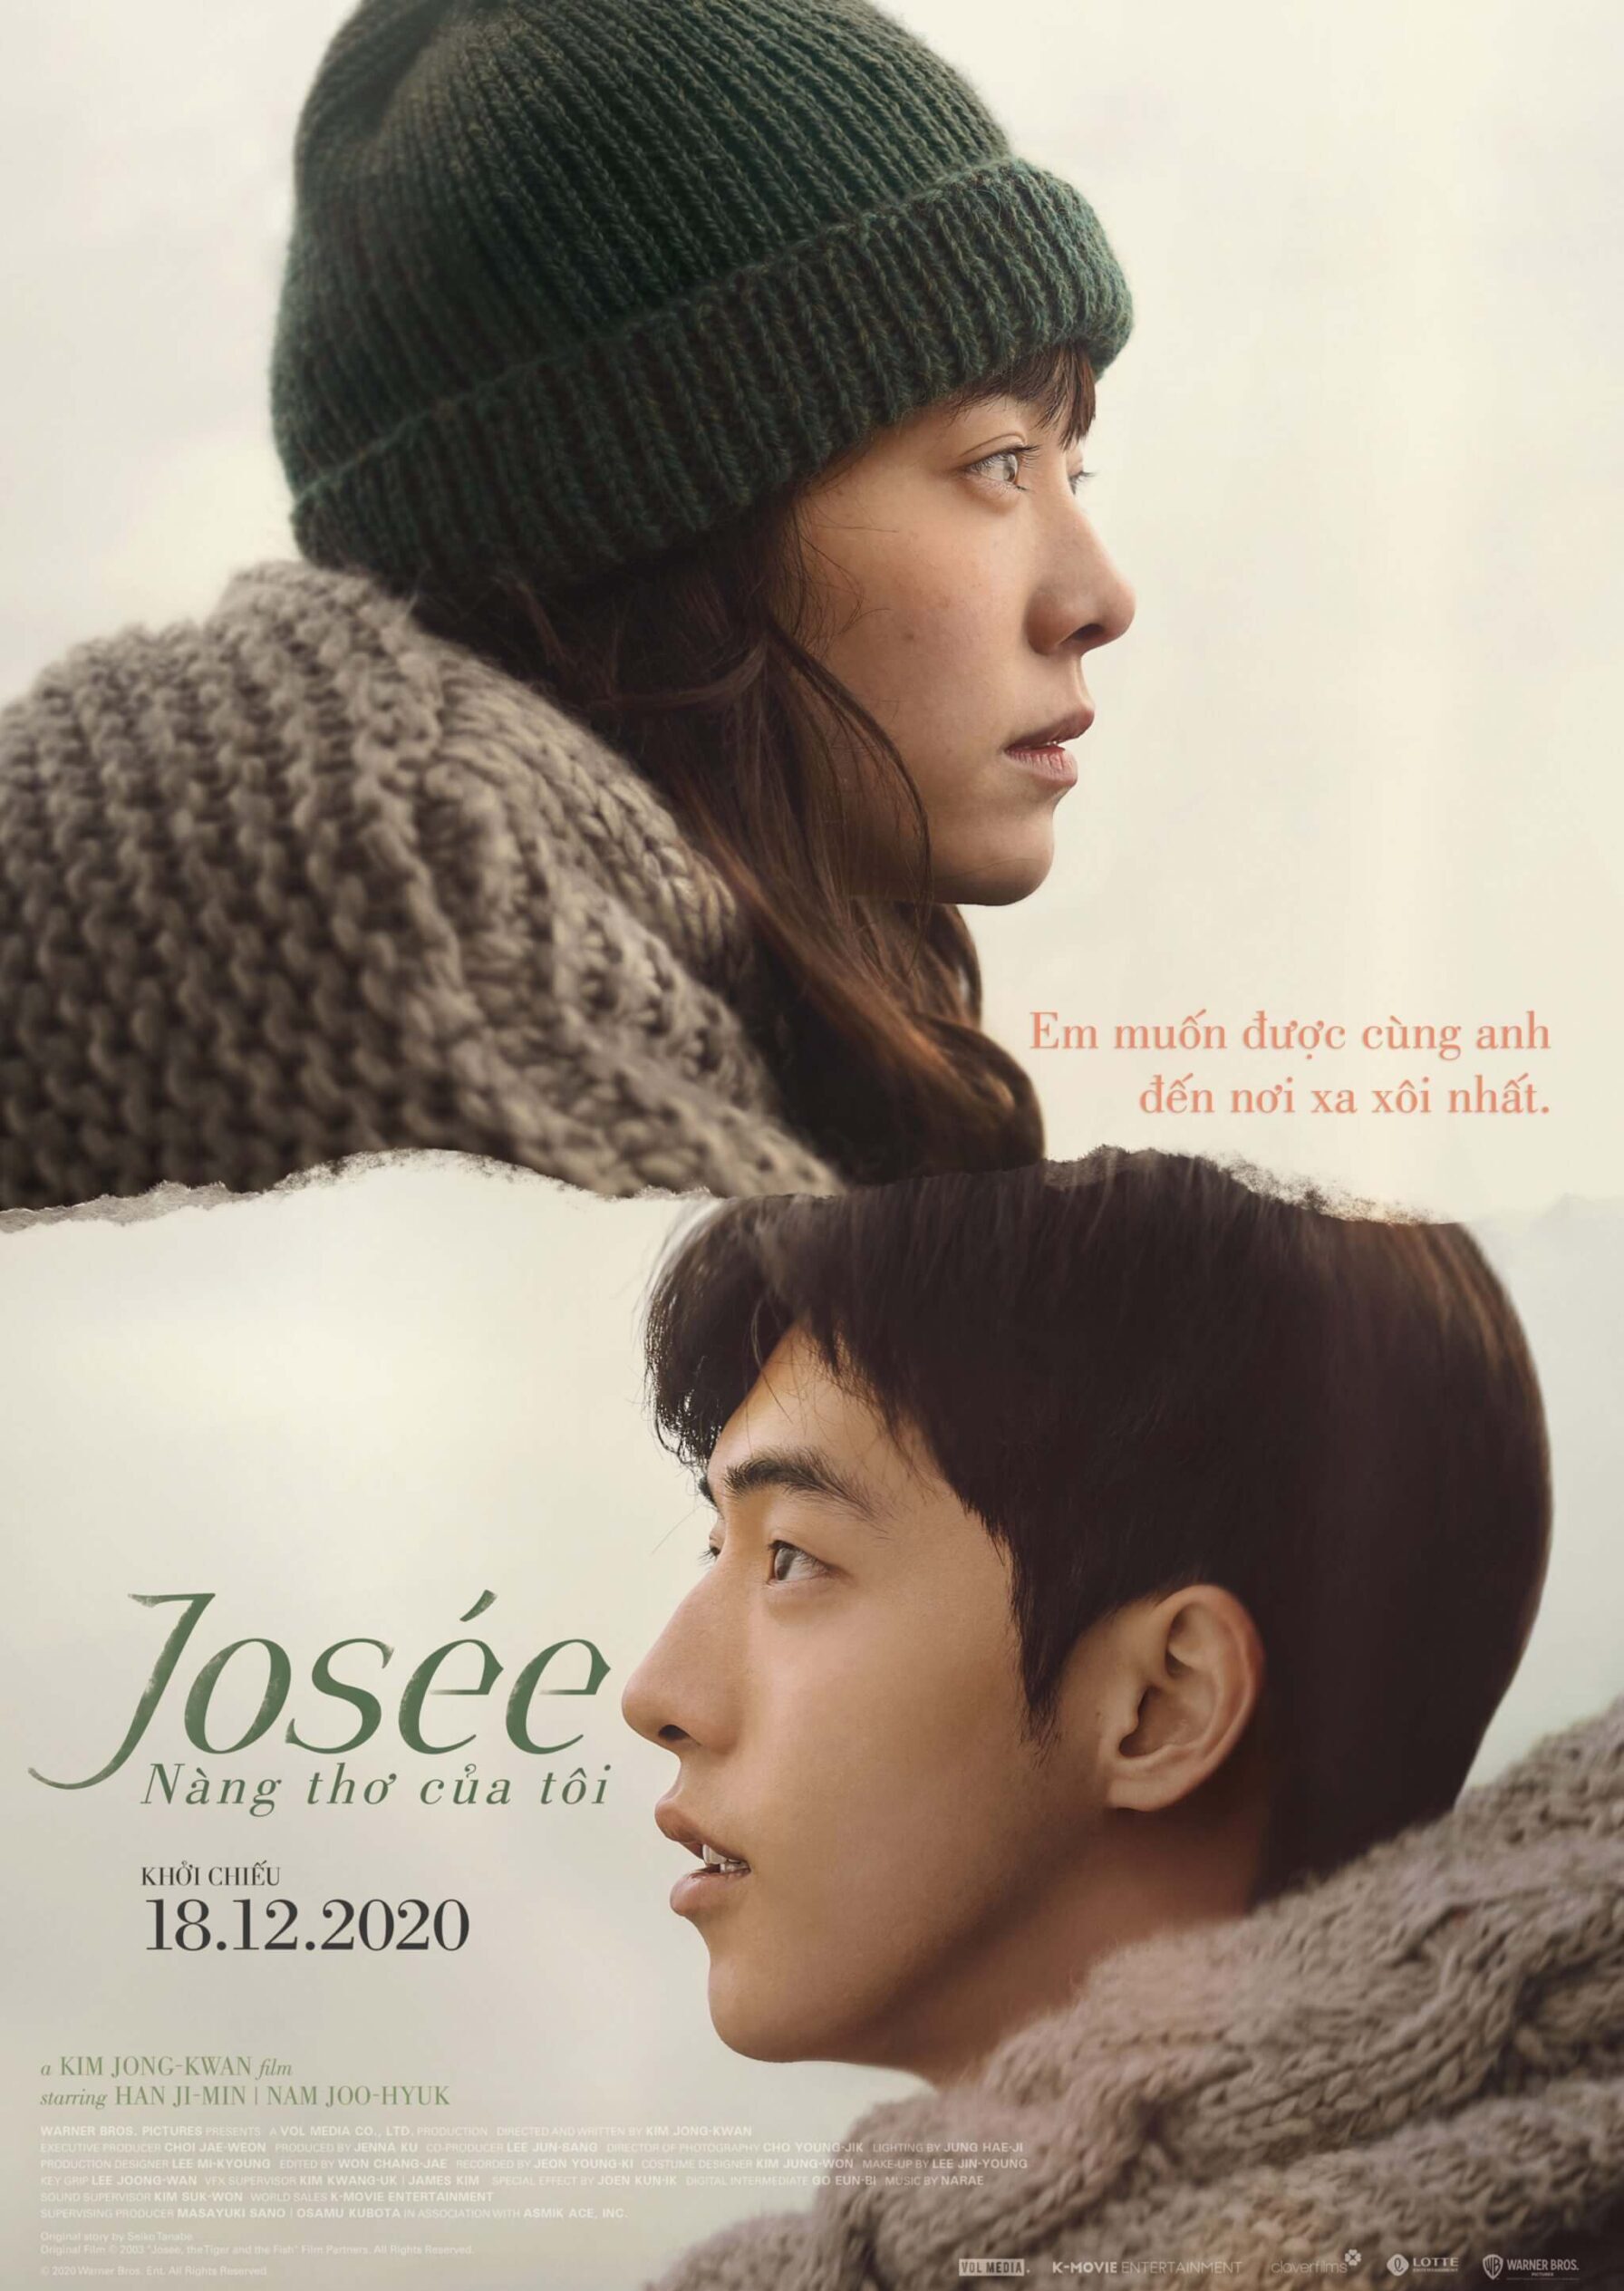 "Josée, nàng thơ của tôi" được làm lại từ "Josee, Tiger And The Fish" của Nhật Bản